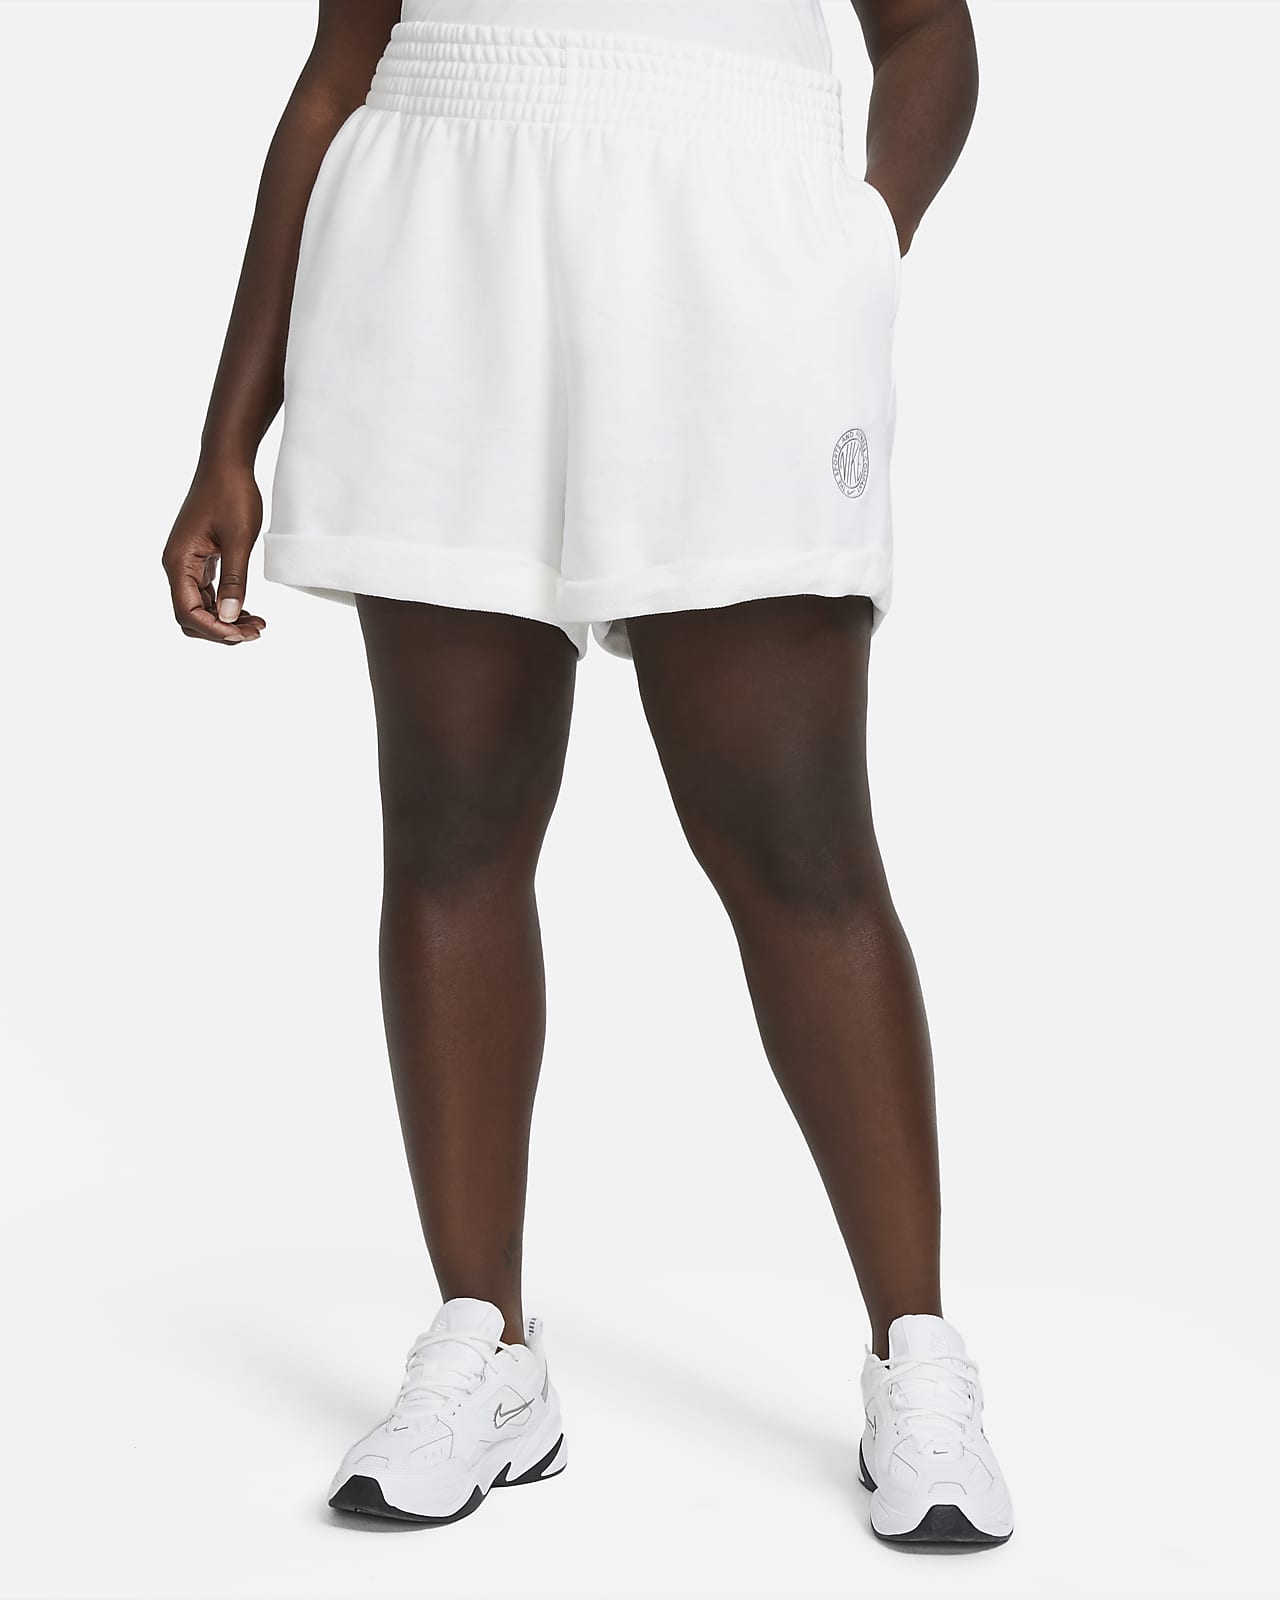 Nike Sportswear Femme Women's Shorts 